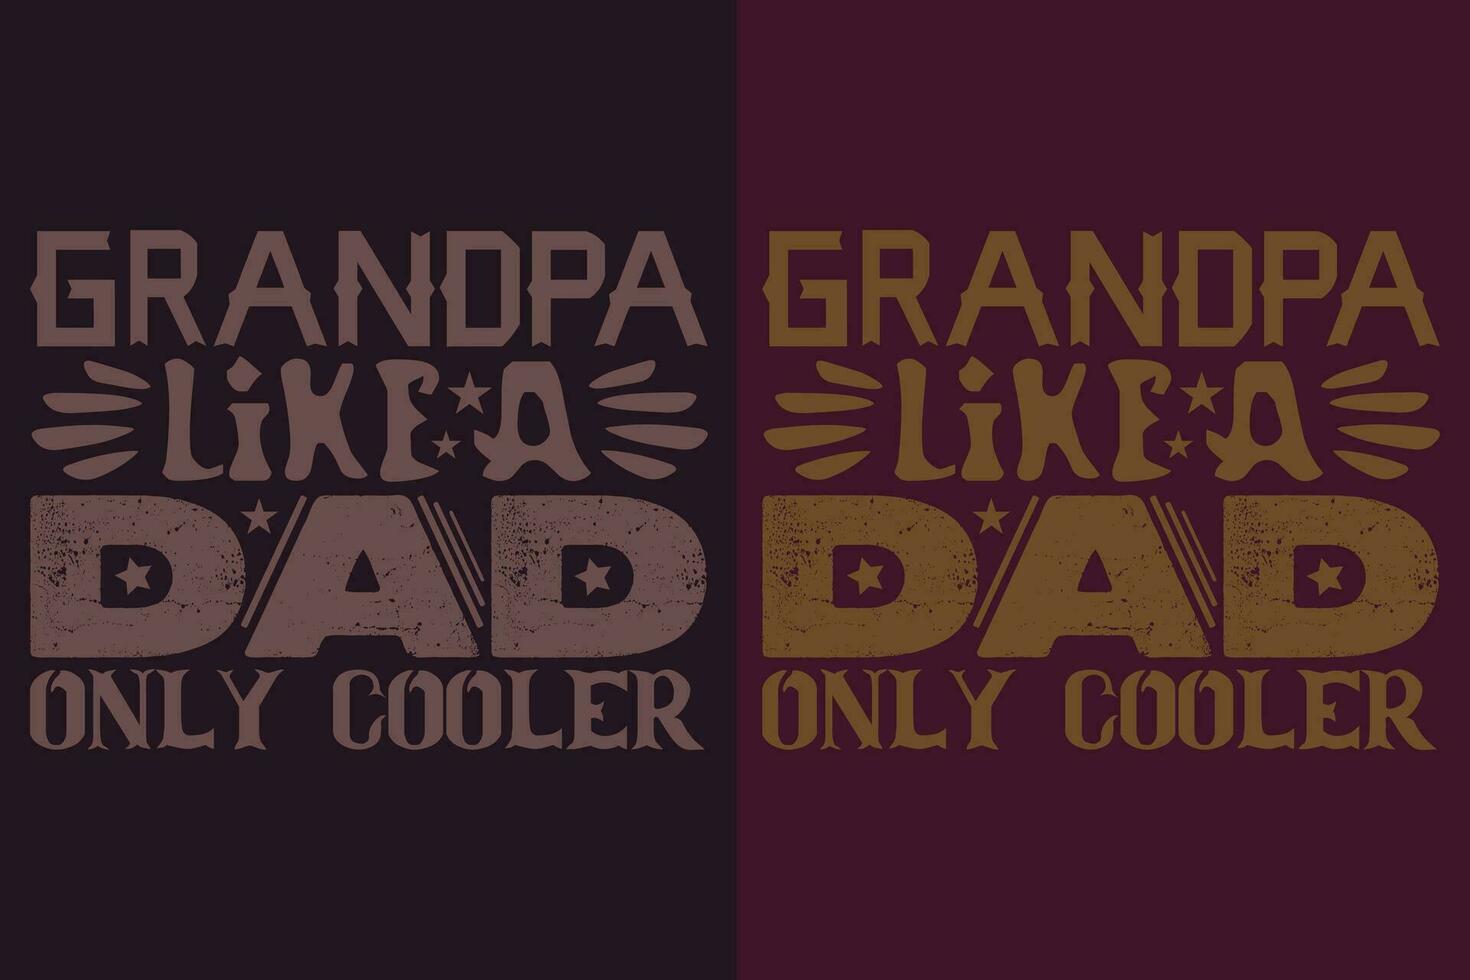 opa Leuk vinden een vader enkel en alleen koeler, opa, opa t-shirt, cadeaus opa, koel opa shirt, opa shirt, geschenk voor opa, t-shirt voor het beste opa ooit vector